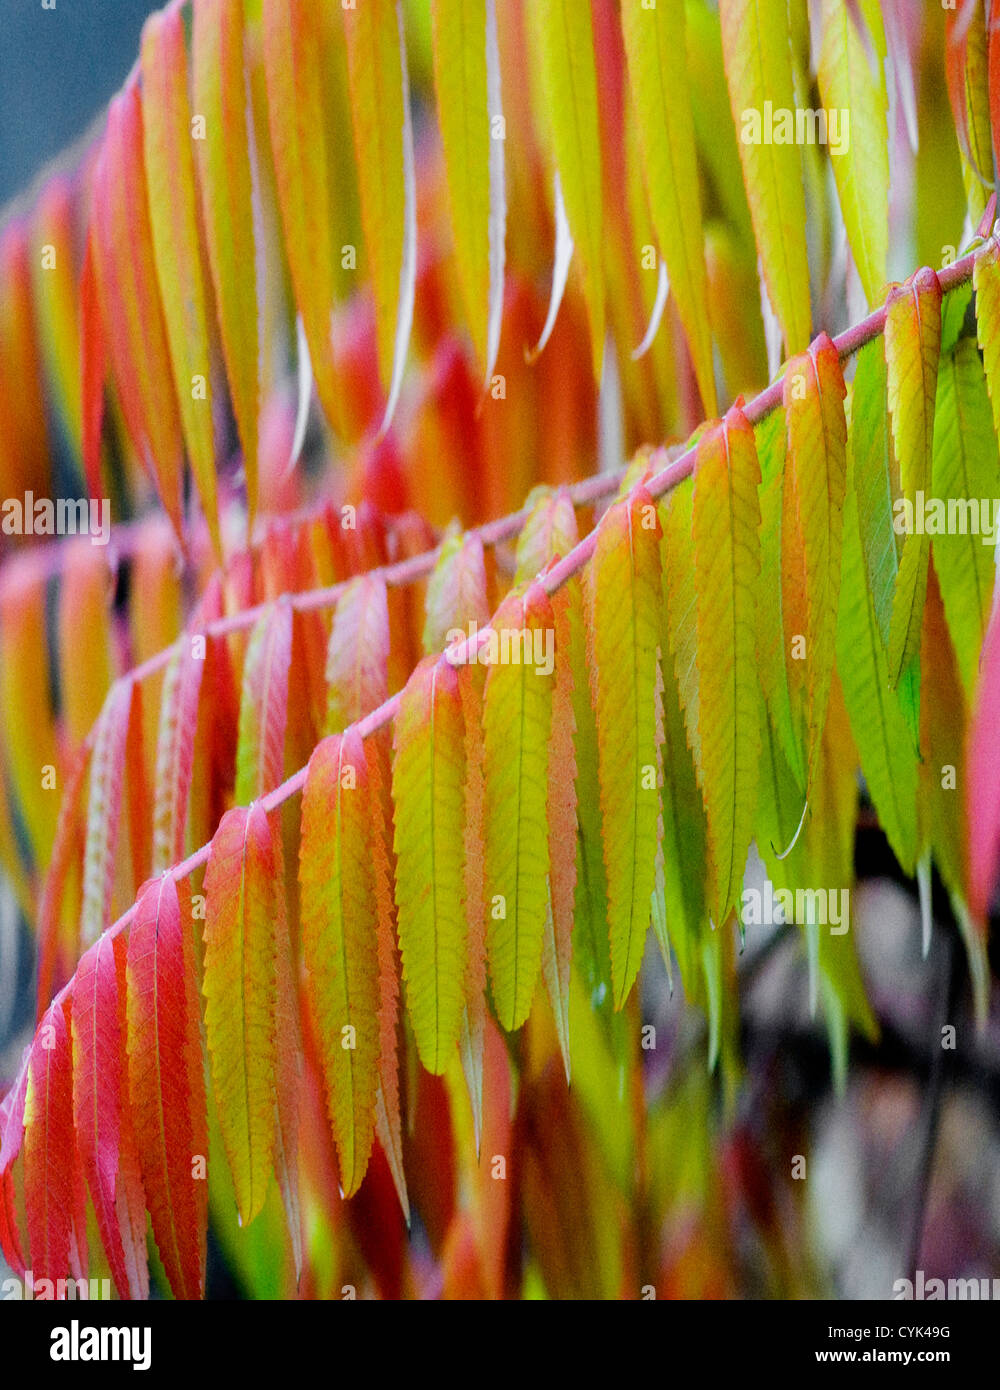 Autumn colours of Rhus typhina the Sumach or Sumac shrub or tree Stock Photo